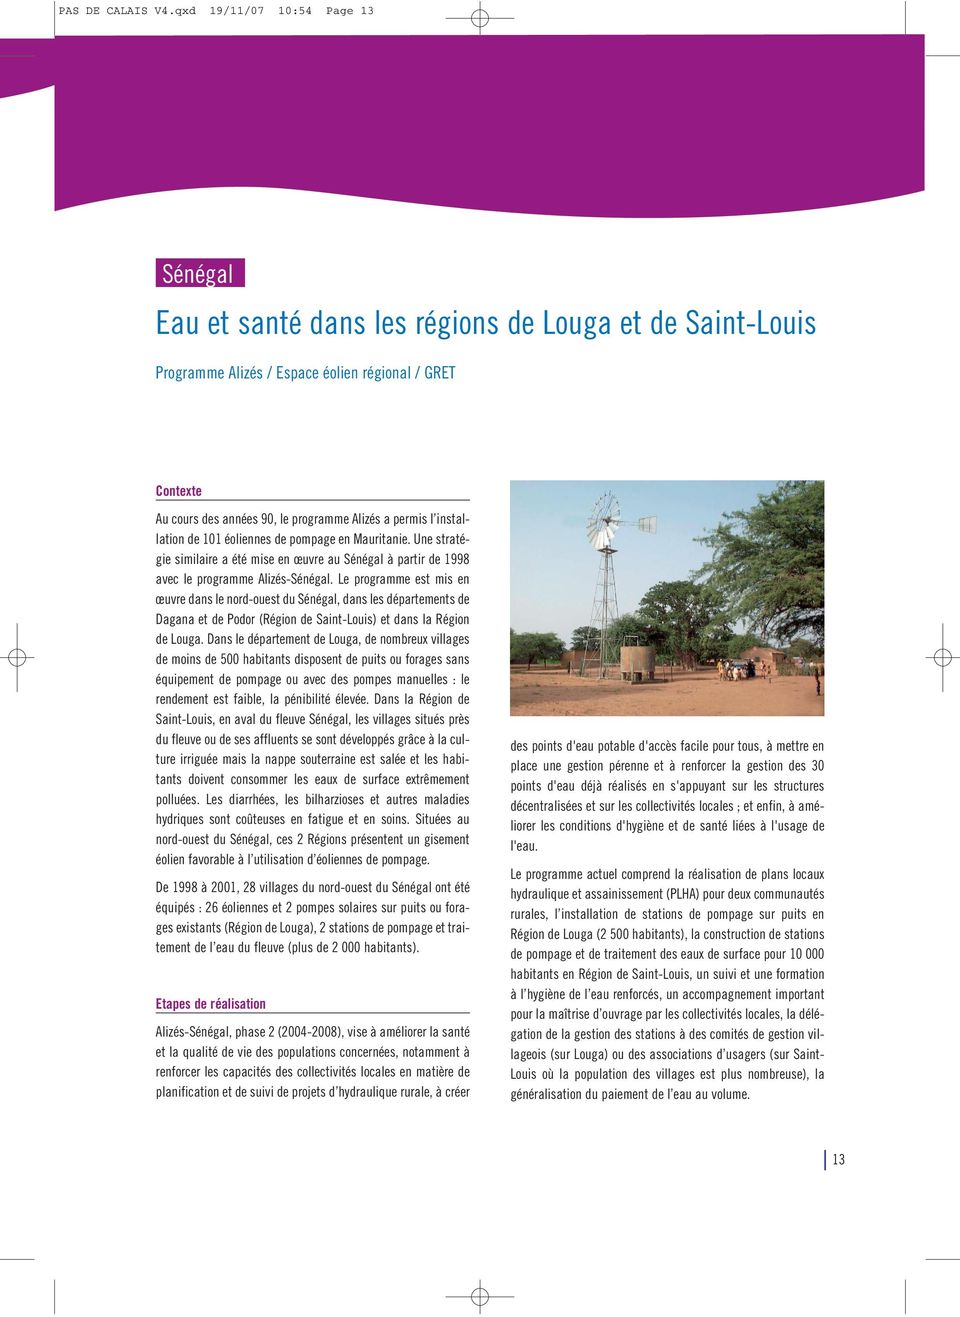 éoliennes de pompage en Mauritanie. Une stratégie similaire a été mise en œuvre au Sénégal à partir de 1998 avec le programme Alizés-Sénégal.